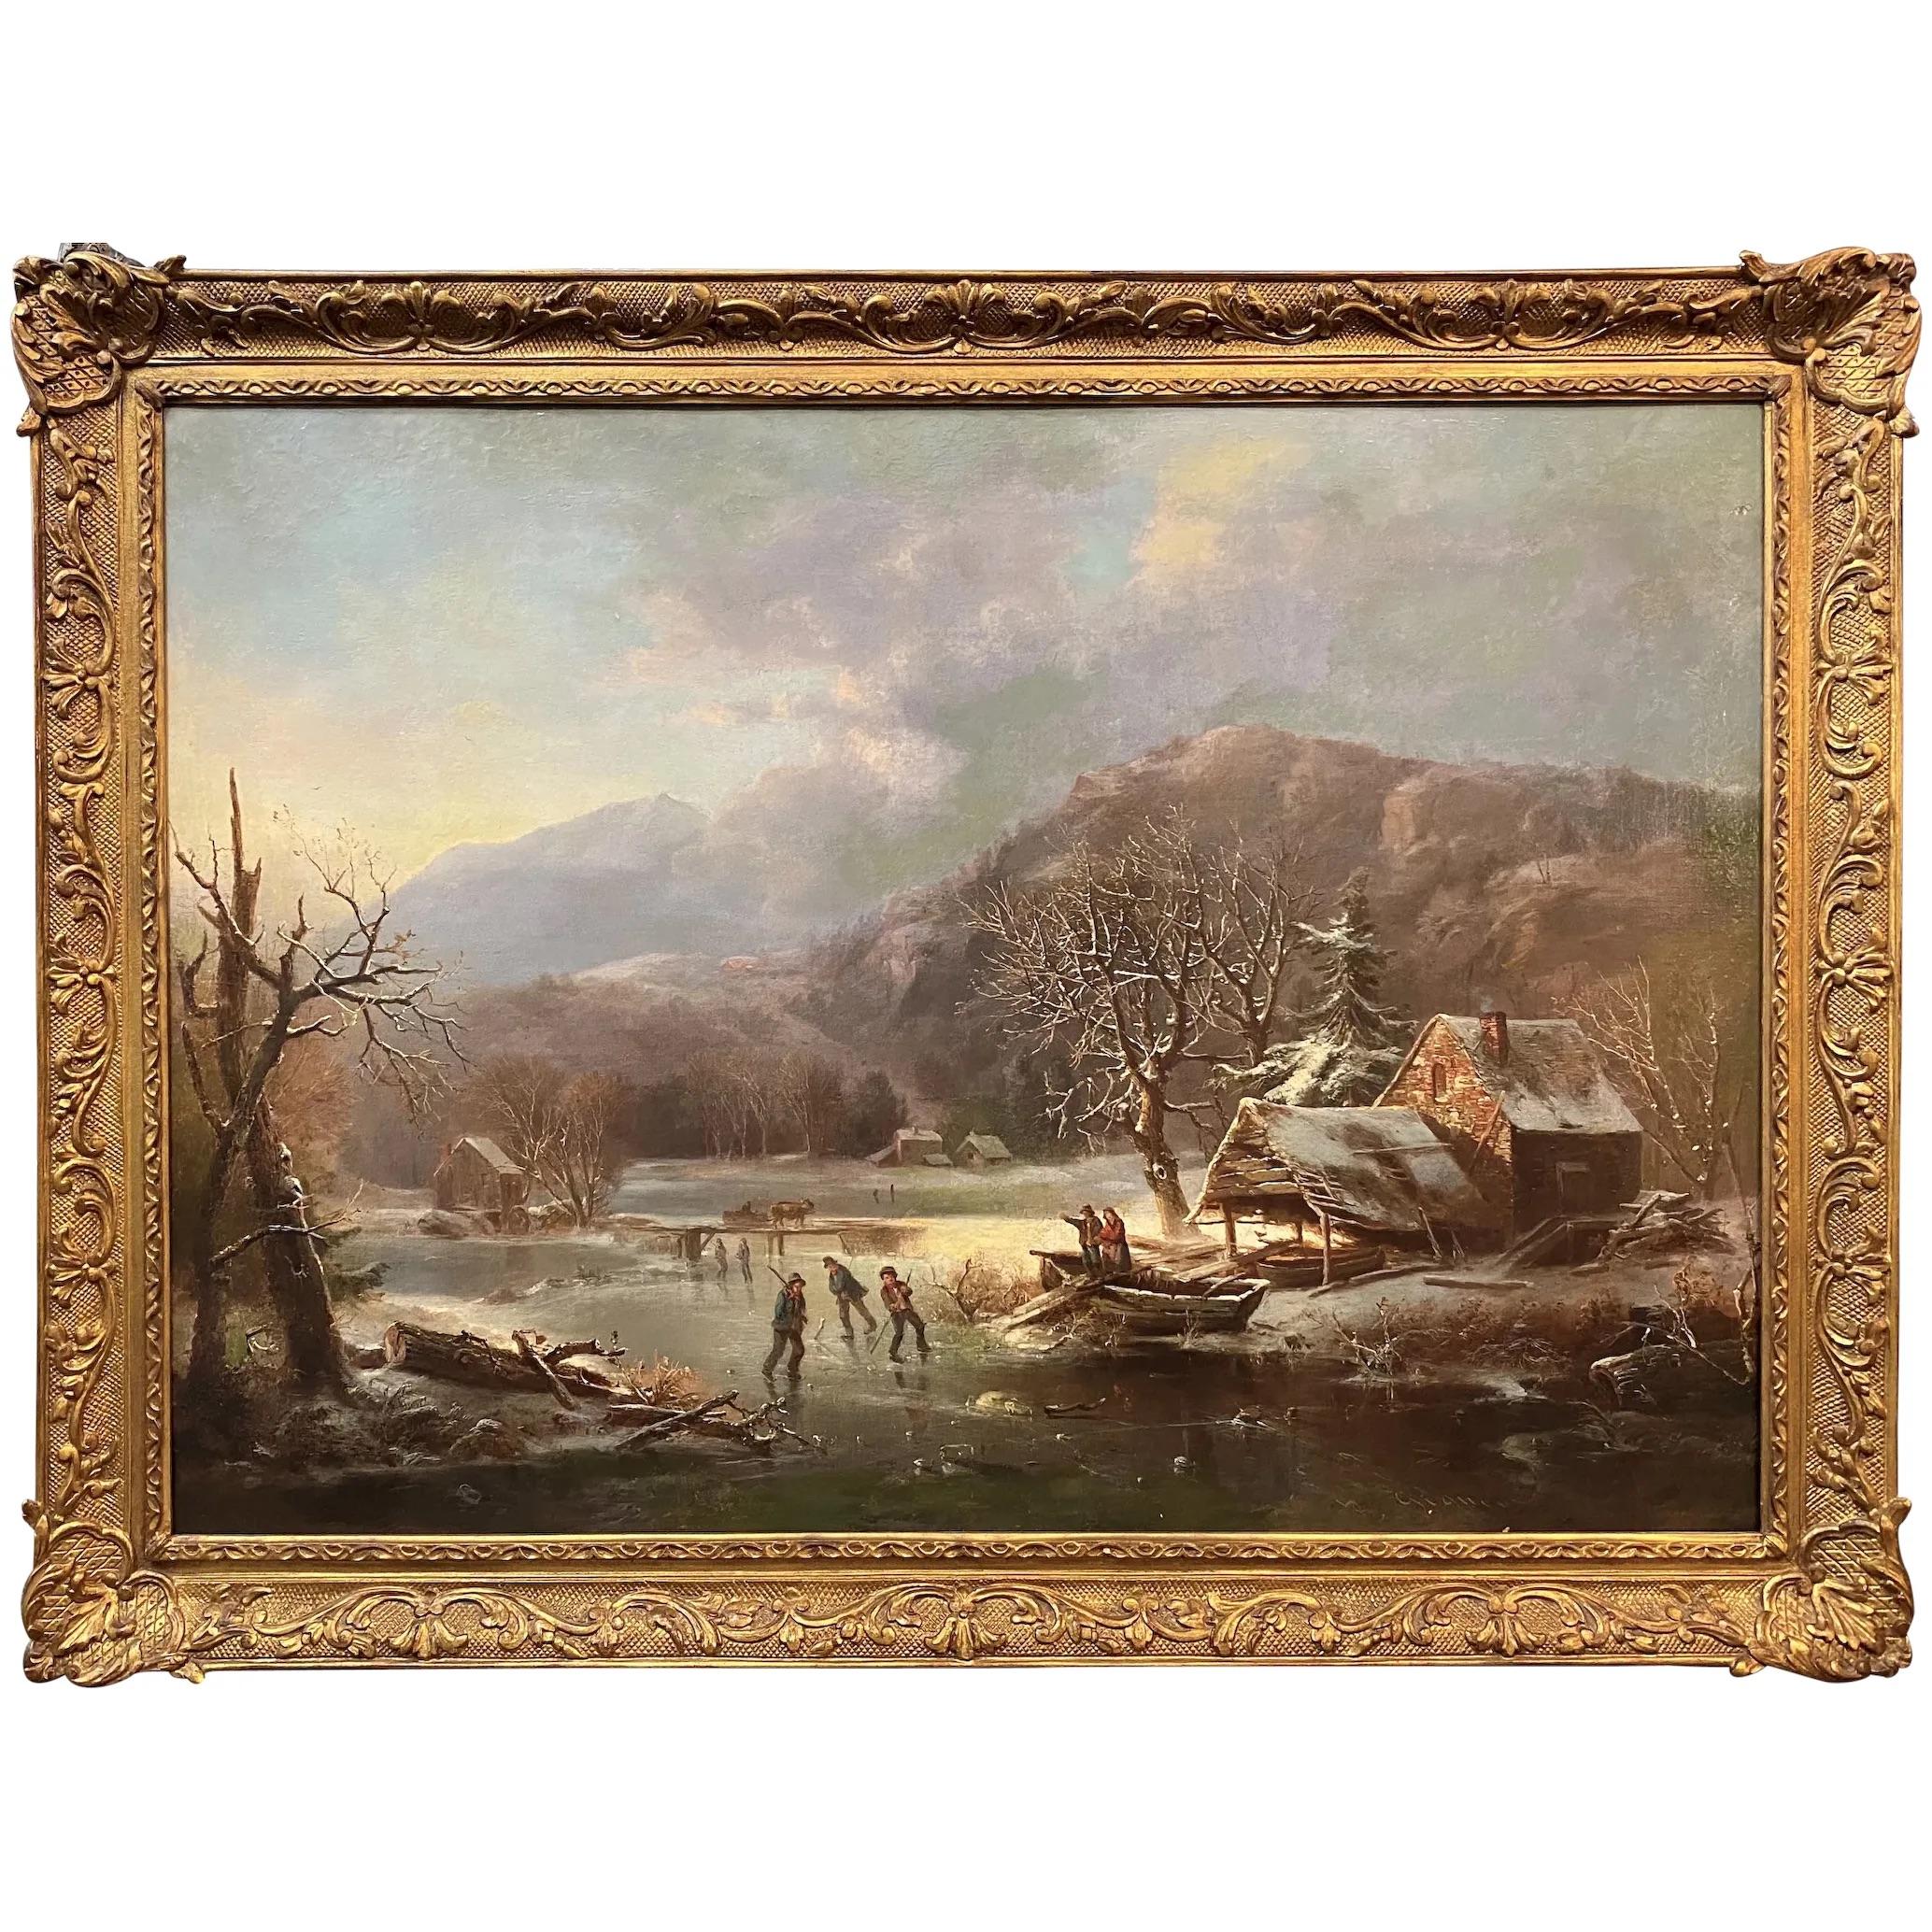 Régis François Gignoux Landscape Painting - Winter Landscape with a Skating Scene